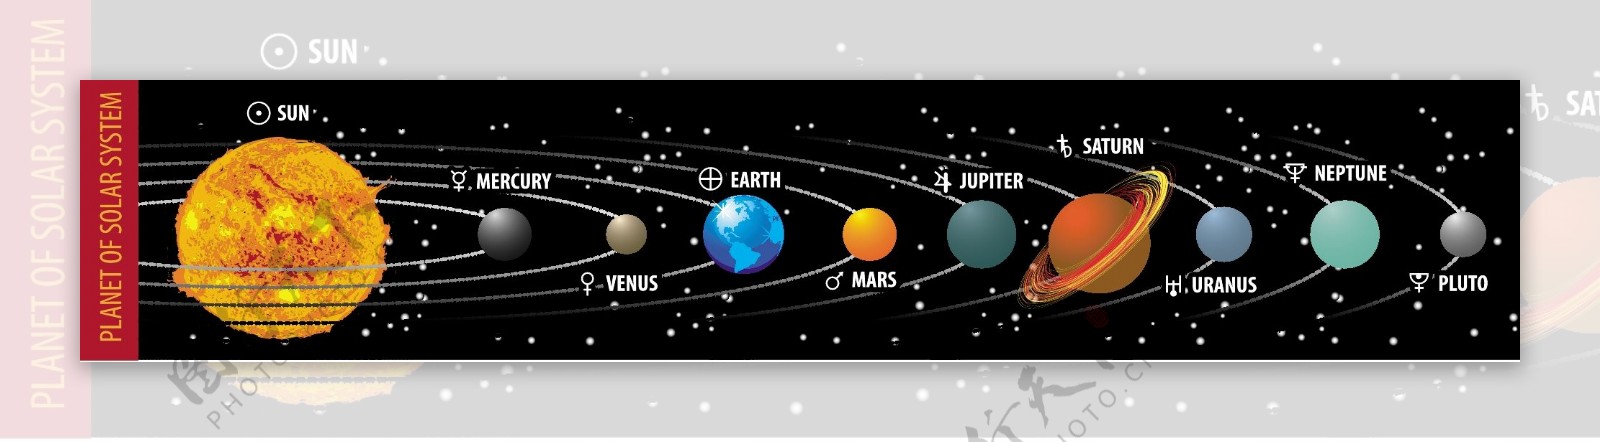 天文太阳系九大行星矢量效果图